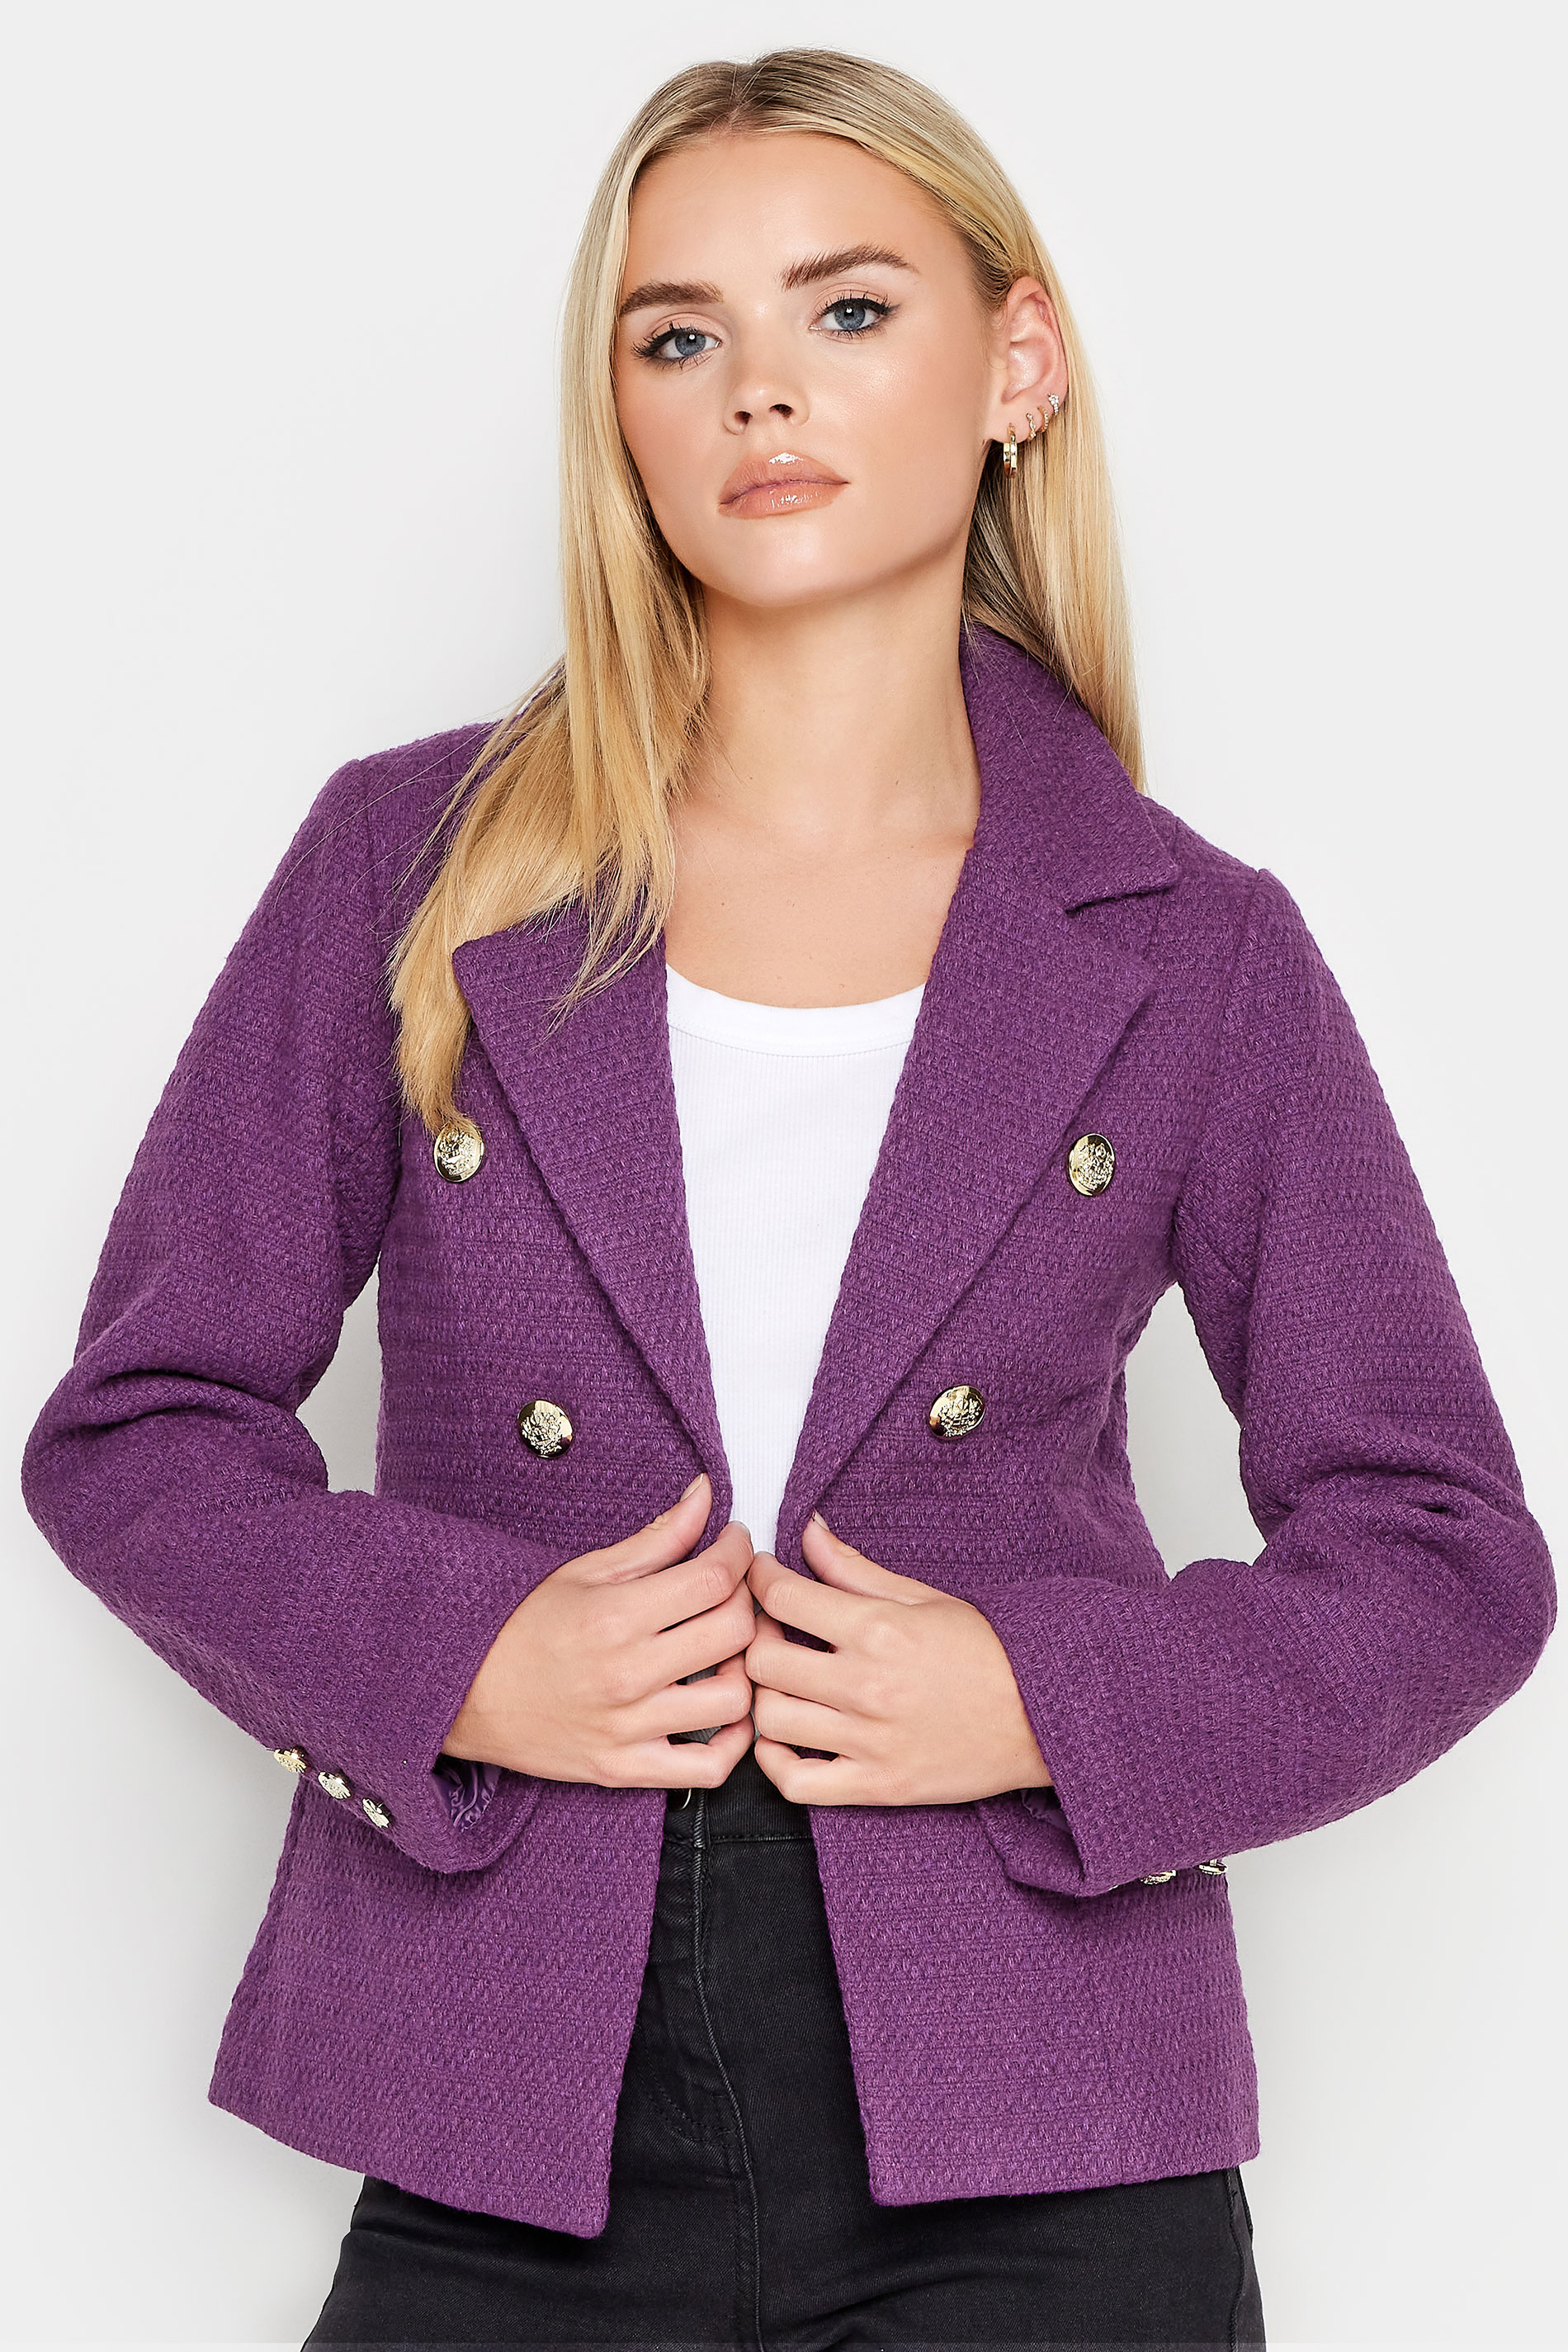 PixieGirl Purple Check Boucle Blazer | PixieGirl  1